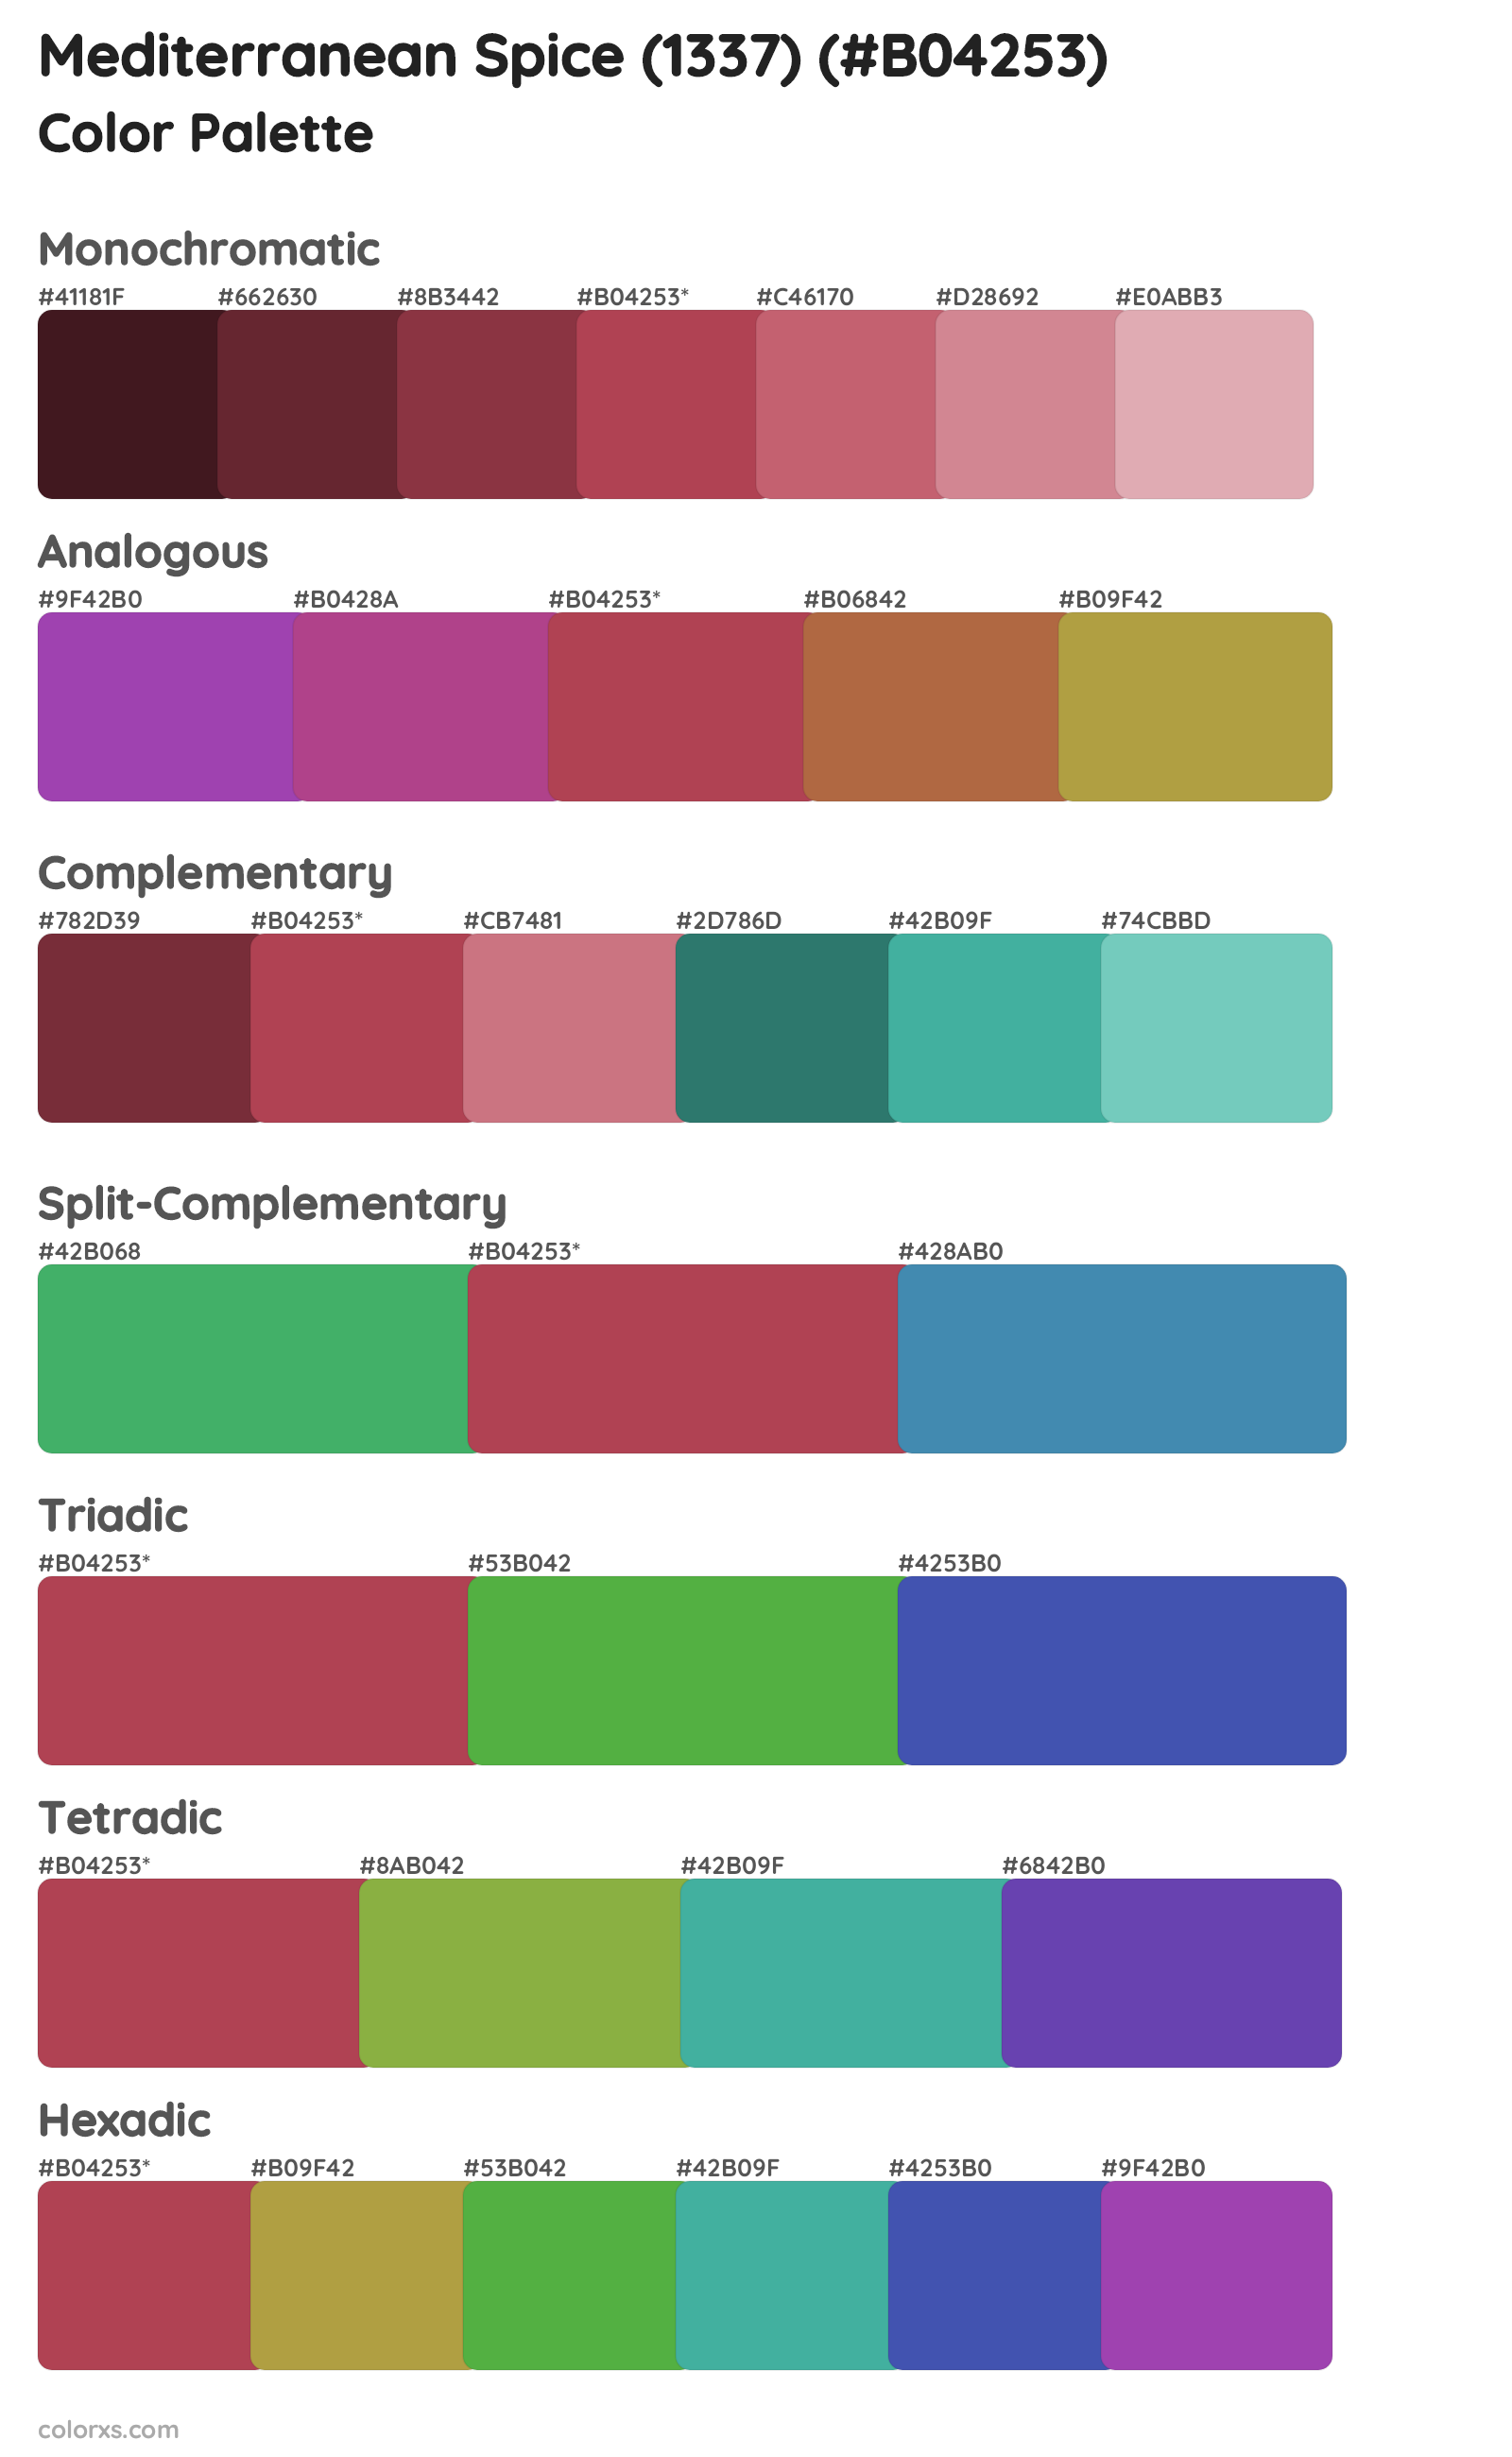 Mediterranean Spice (1337) Color Scheme Palettes